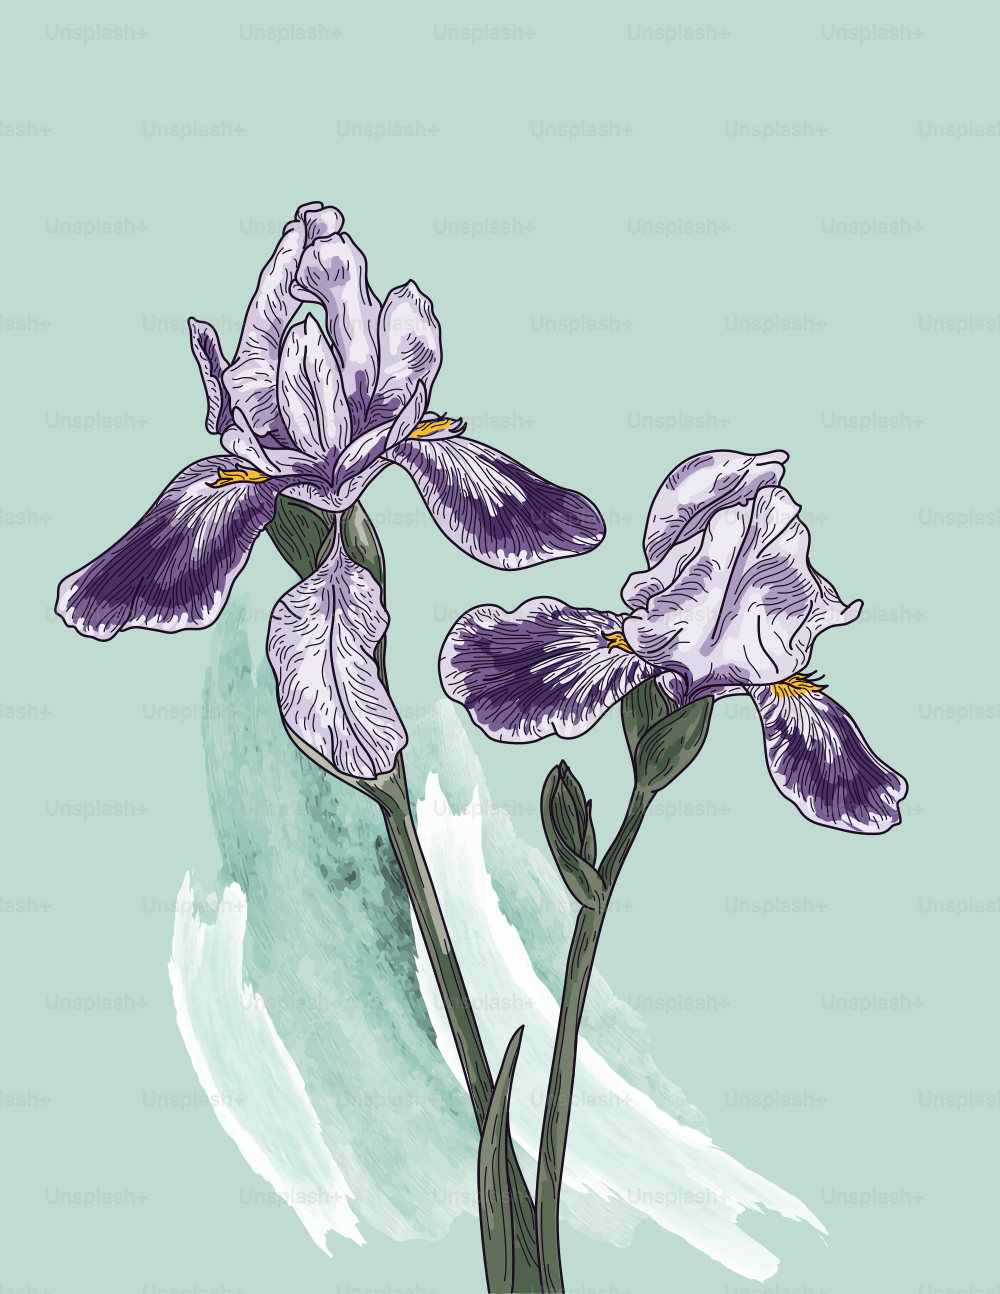 シンプルな水彩画の背景にアイリスの花のエレガントで詳細なラインアートワーク。